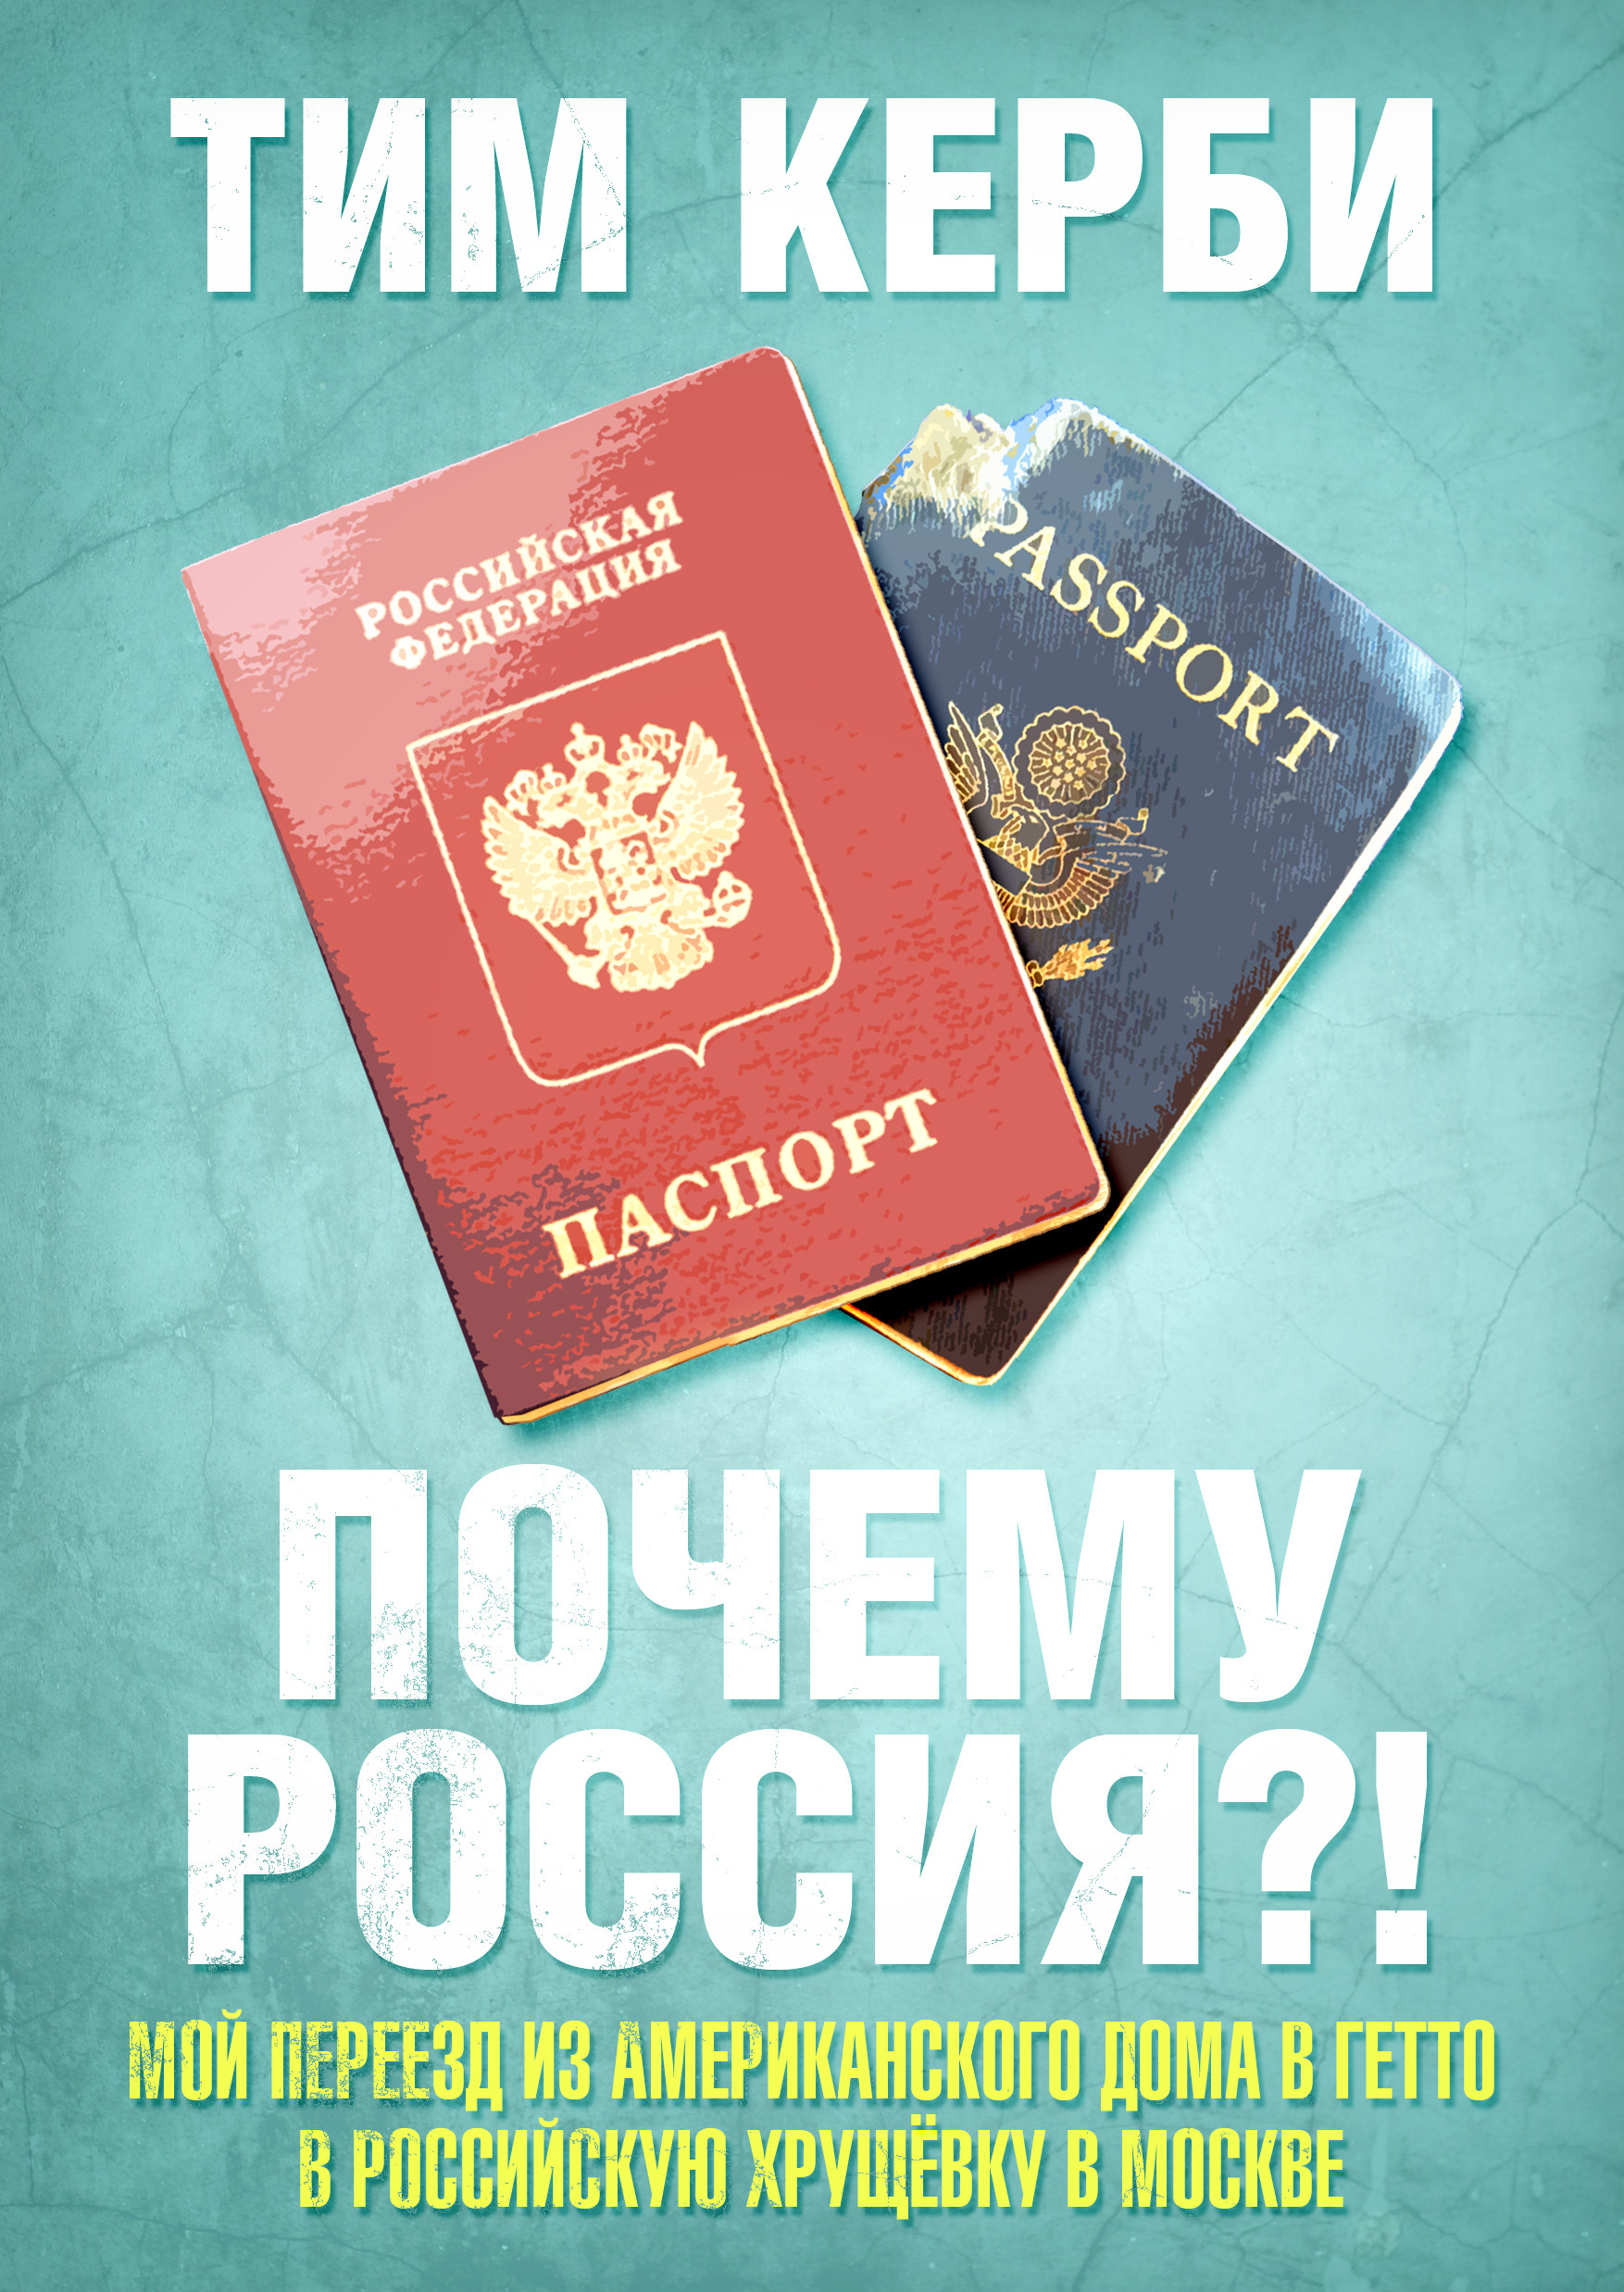 "Почему Россия? Мой переезд из американского дома в гетто в российскую хрущёвку в Москве" - обложка